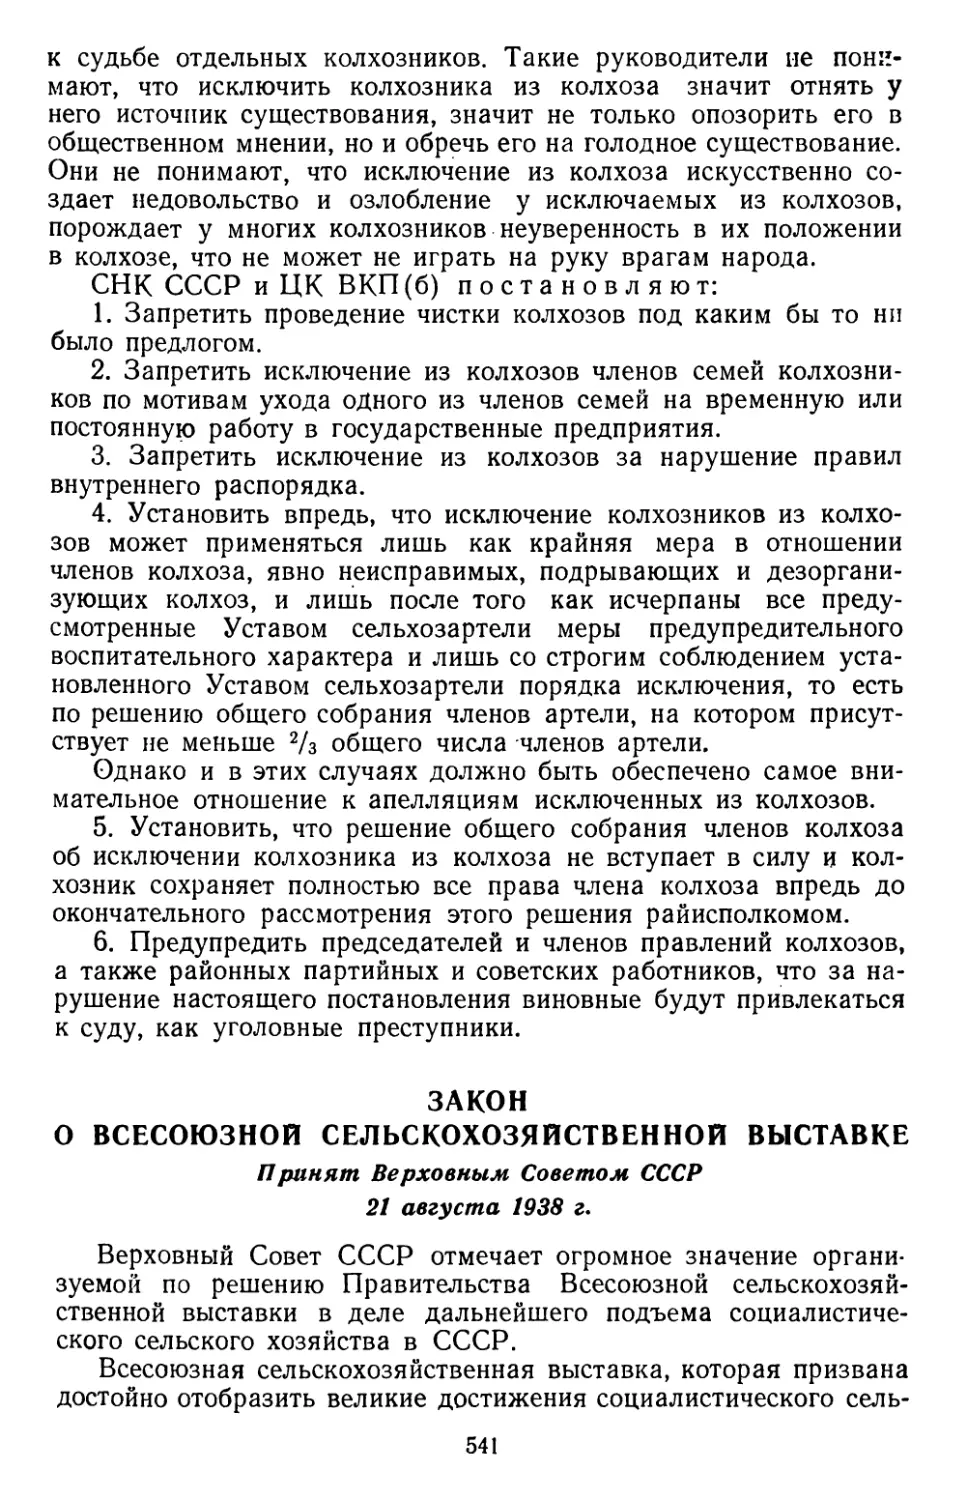 Закон о Всесоюзной сельскохозяйственной выставке. Принят Верховным Советом СССР 21 августа 1938 г